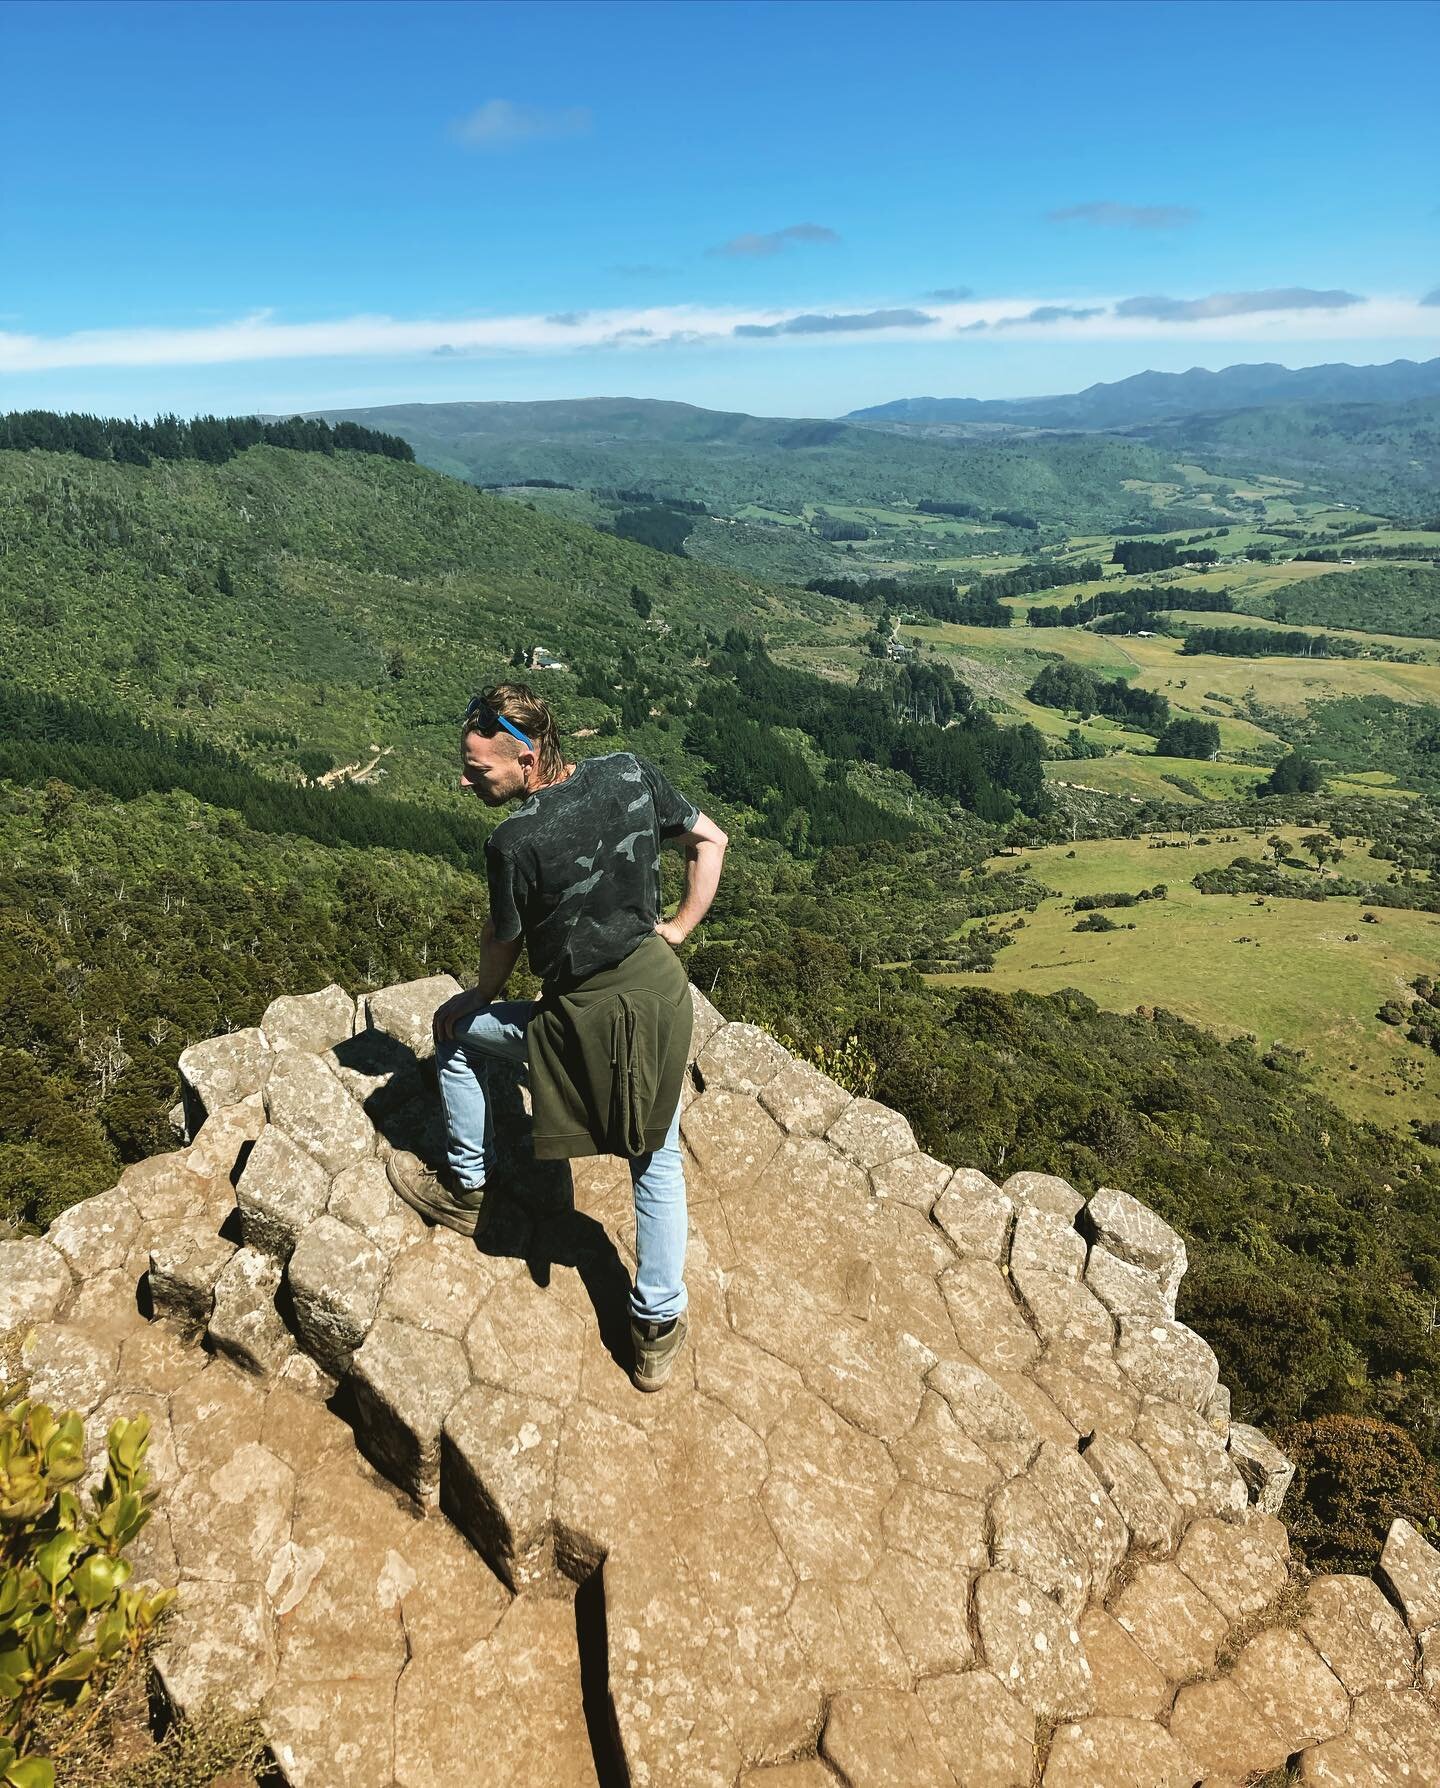 Don&rsquo;t look down ! #mountaintop #mountcargill #organpipes #cargill #endof2020 #2021goals 
#dunedin #dunedinsummer #dunnerstunner #pland